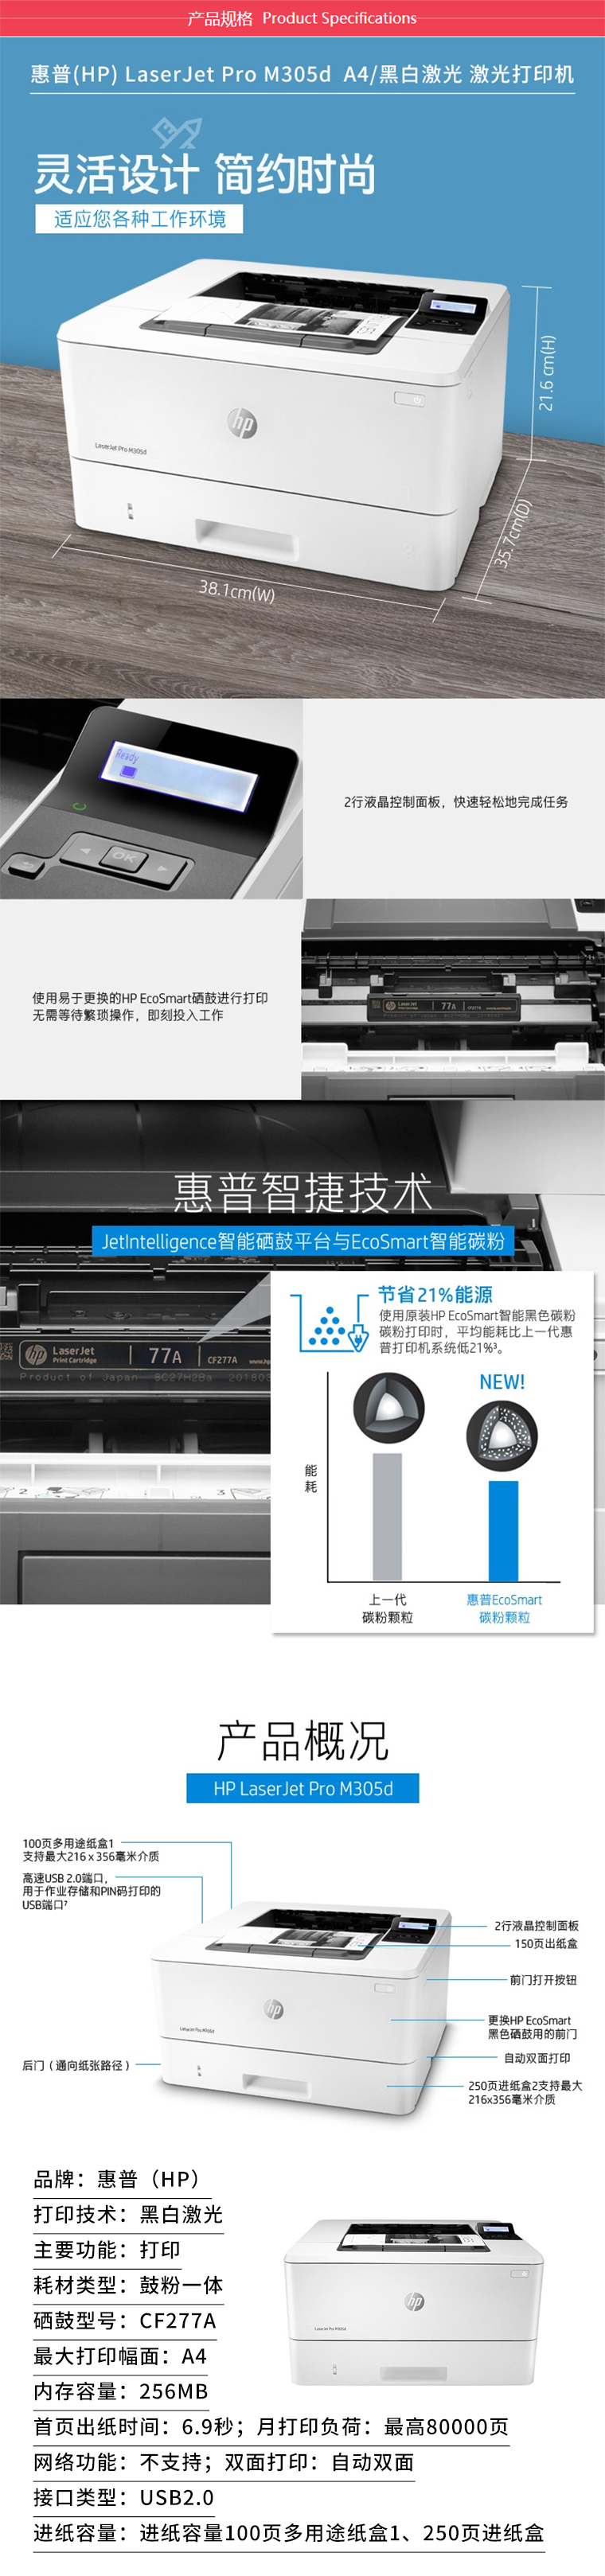 惠普M305D 激光打印机